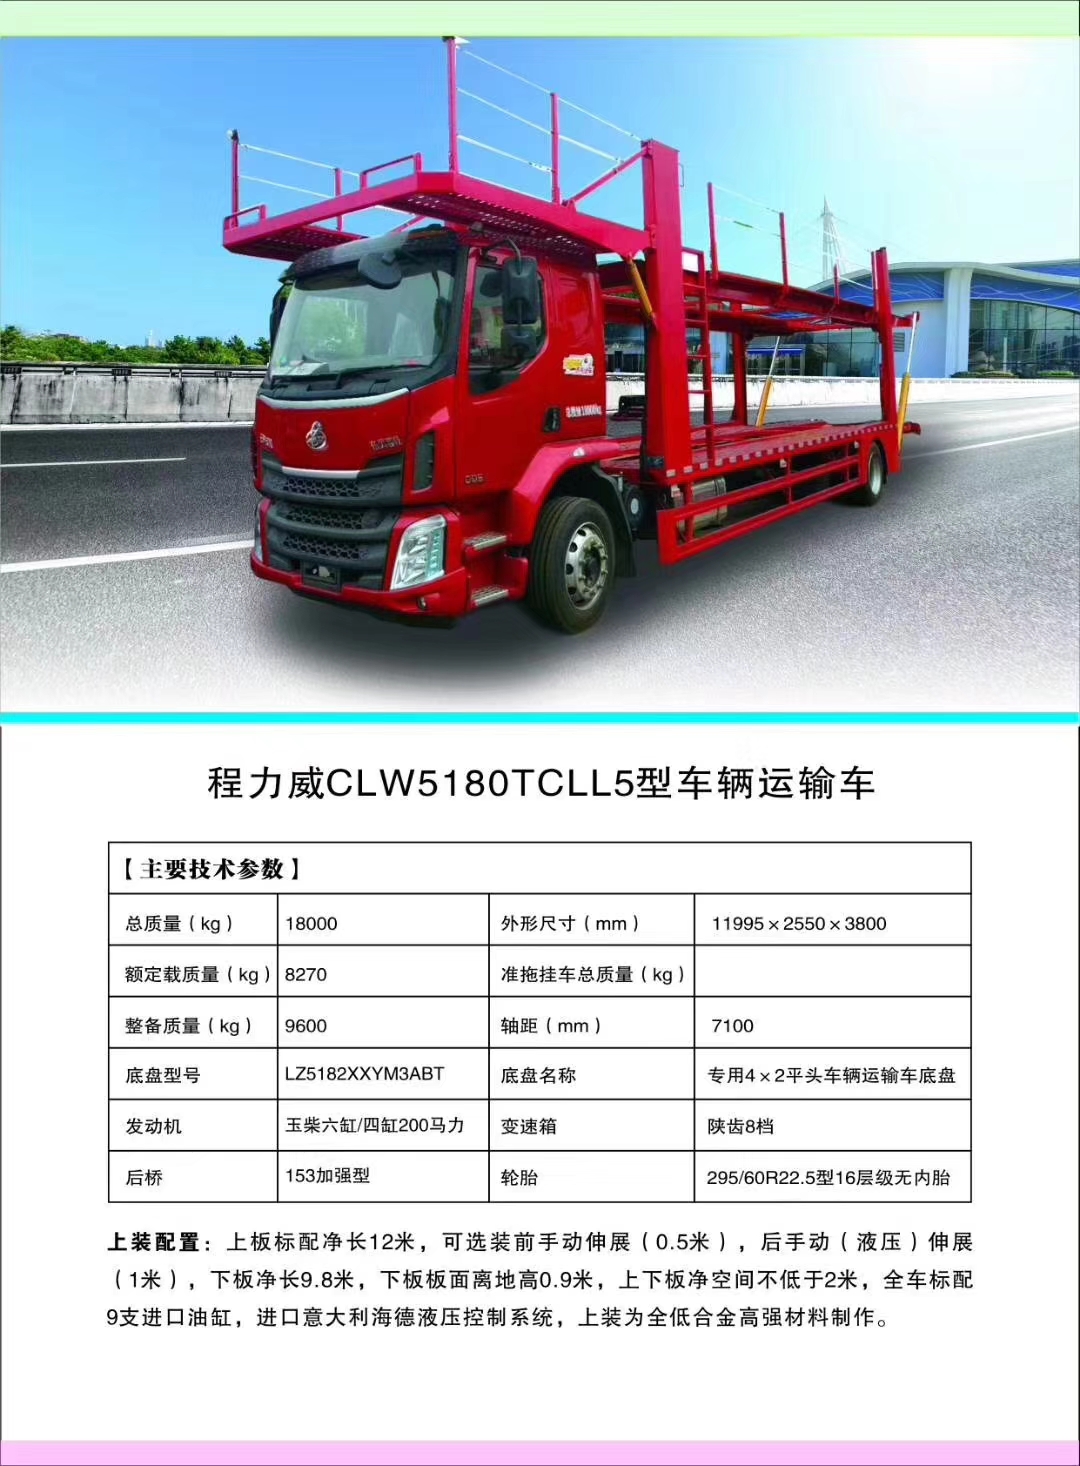 j9.com(中国区)官方网站轿运车产品图片